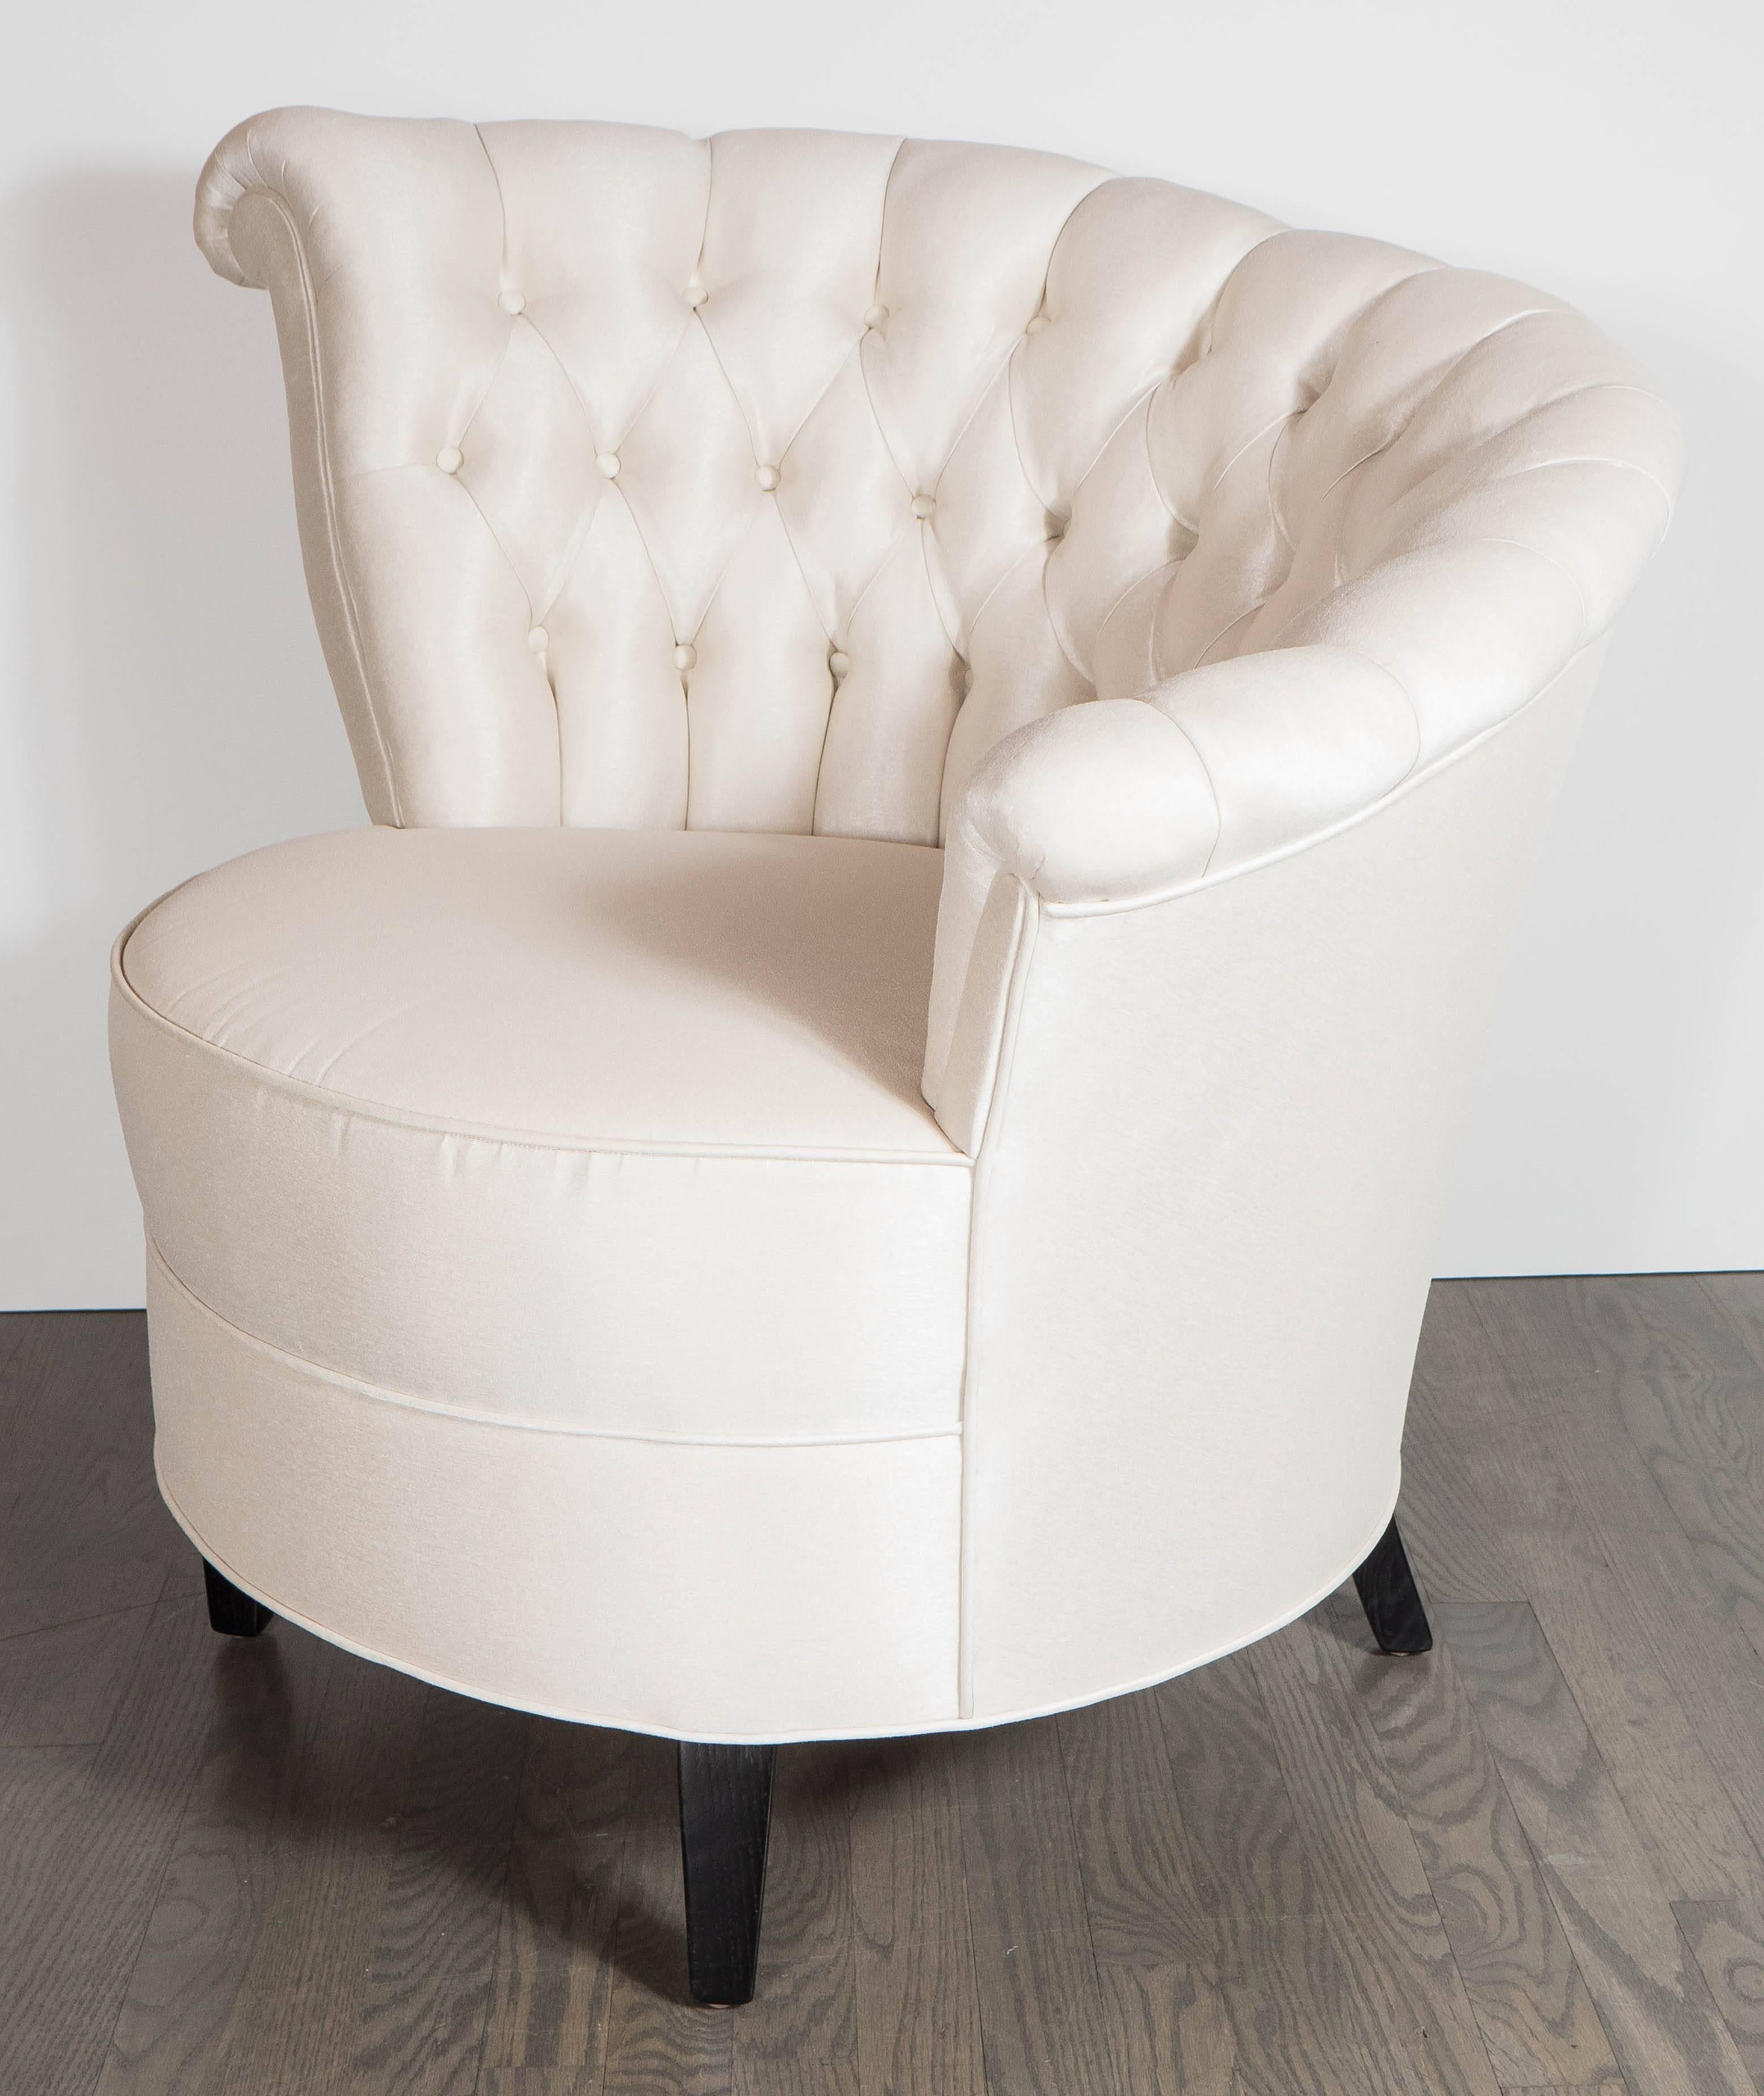 asymmetrical chairs